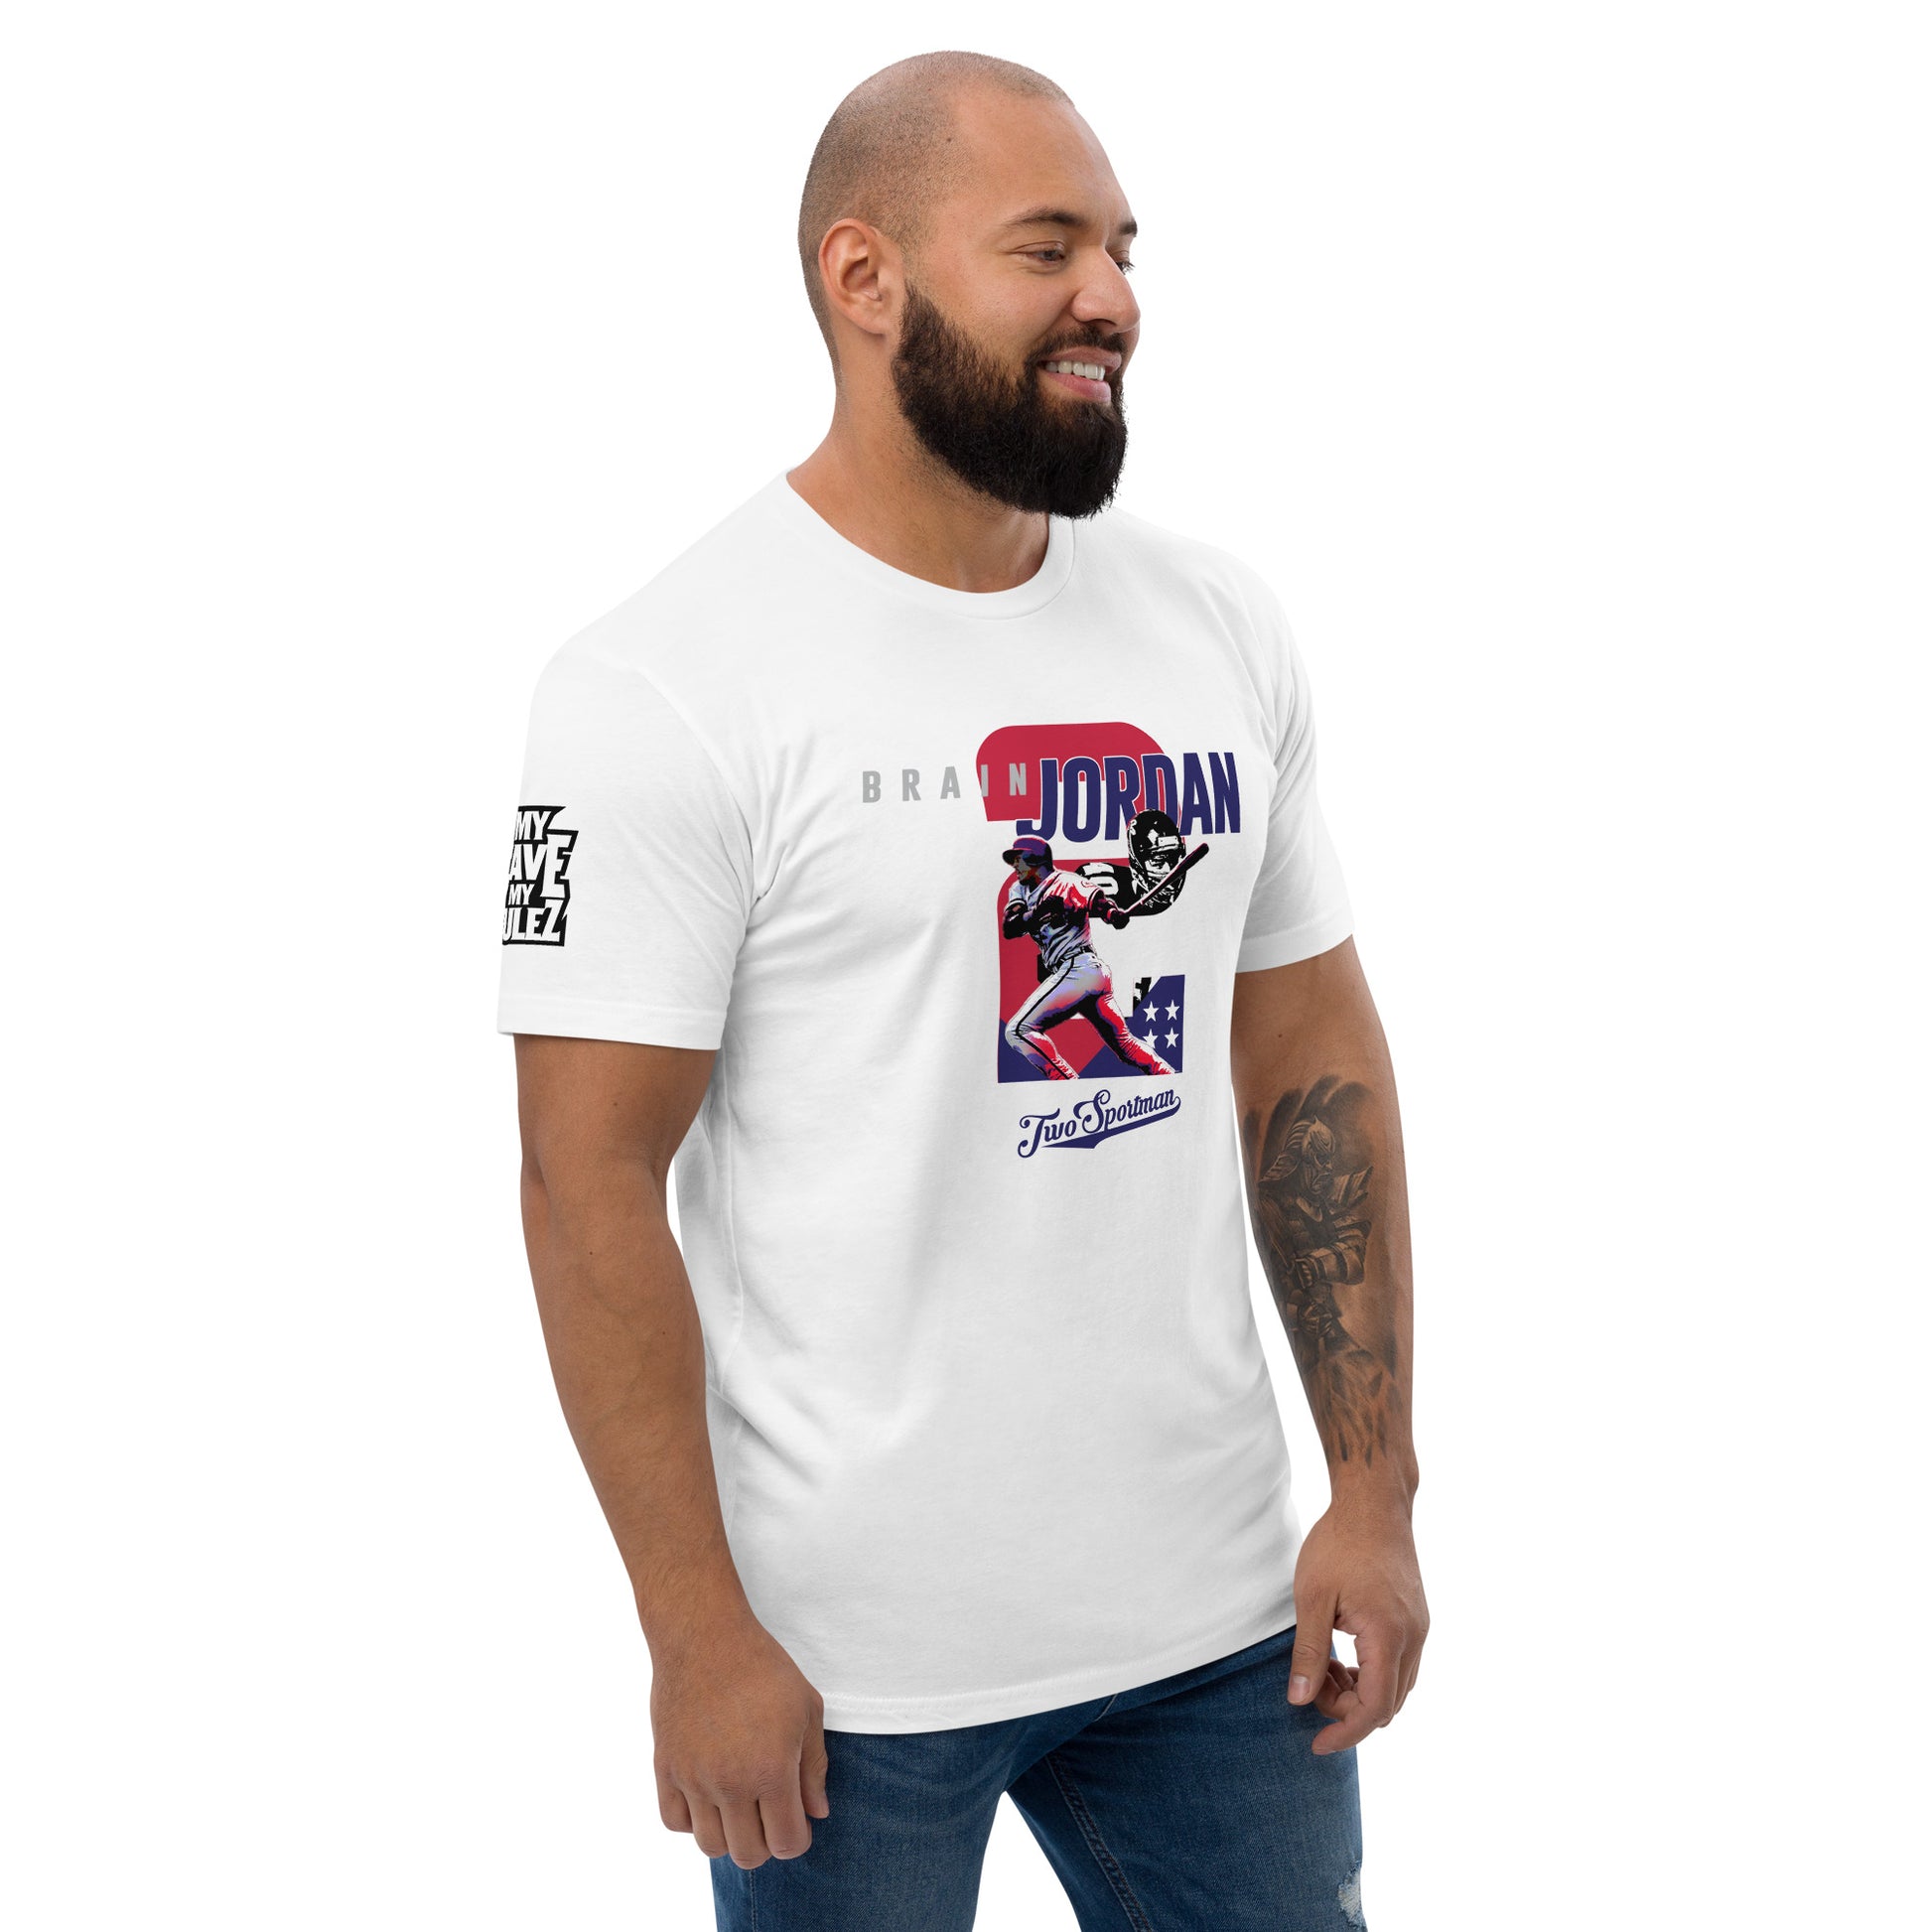 Dual-Sport Legend: Short Sleeve T-shirt